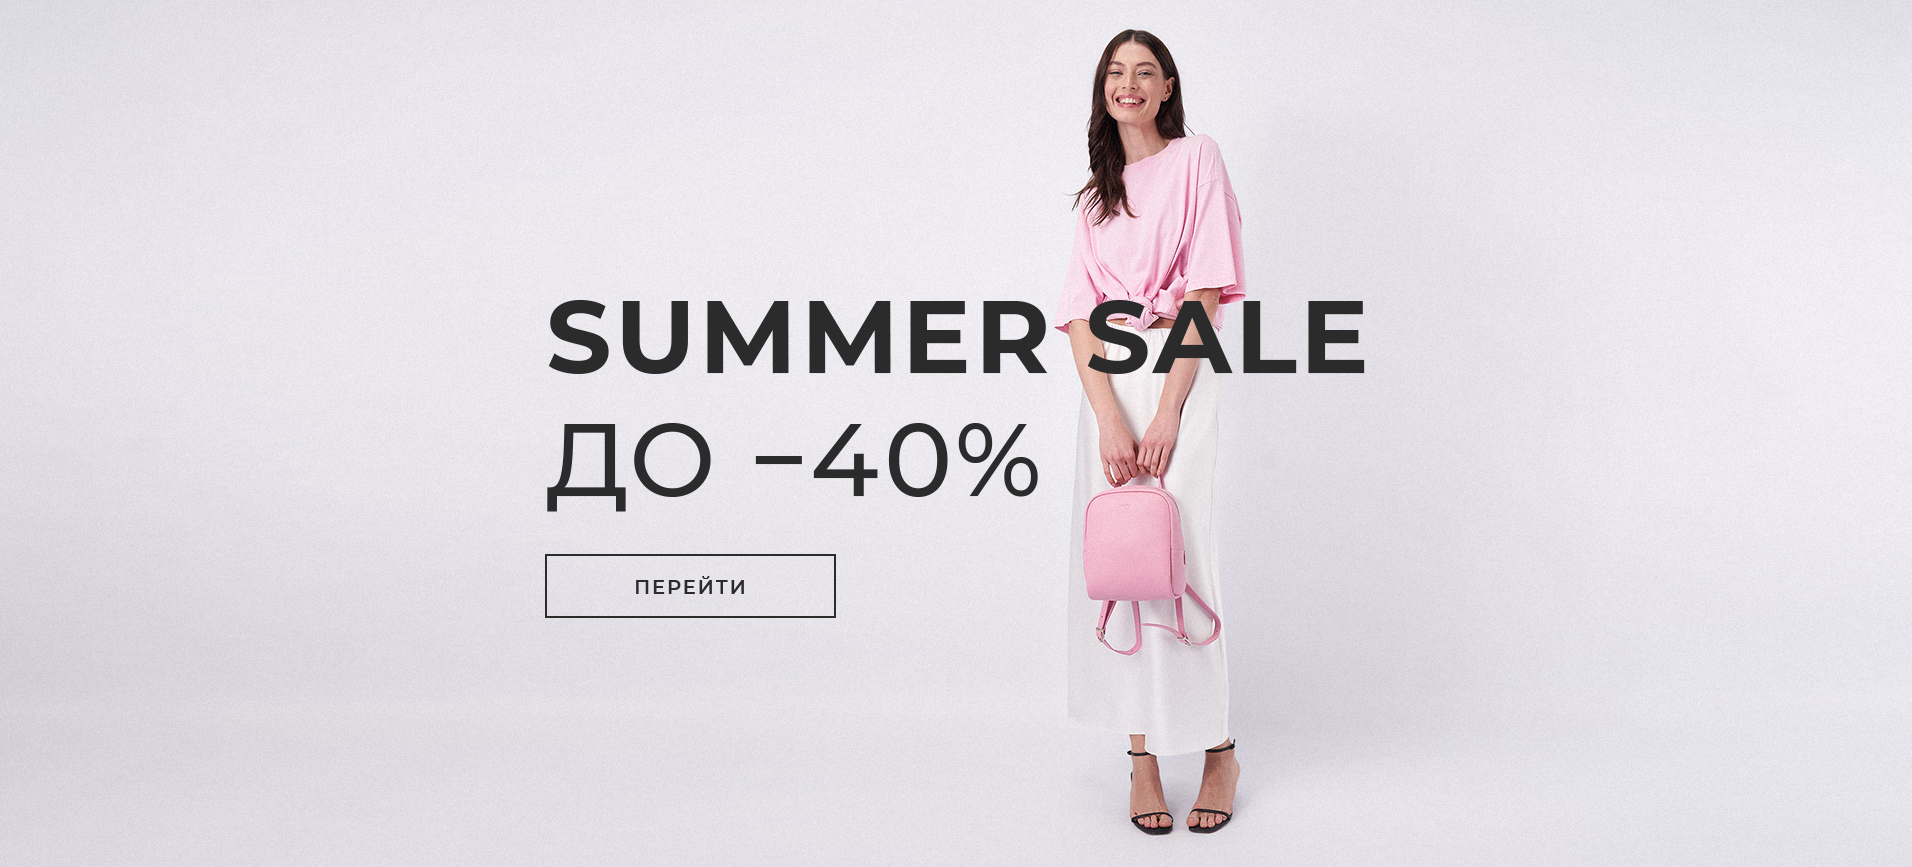 Summer sale 24